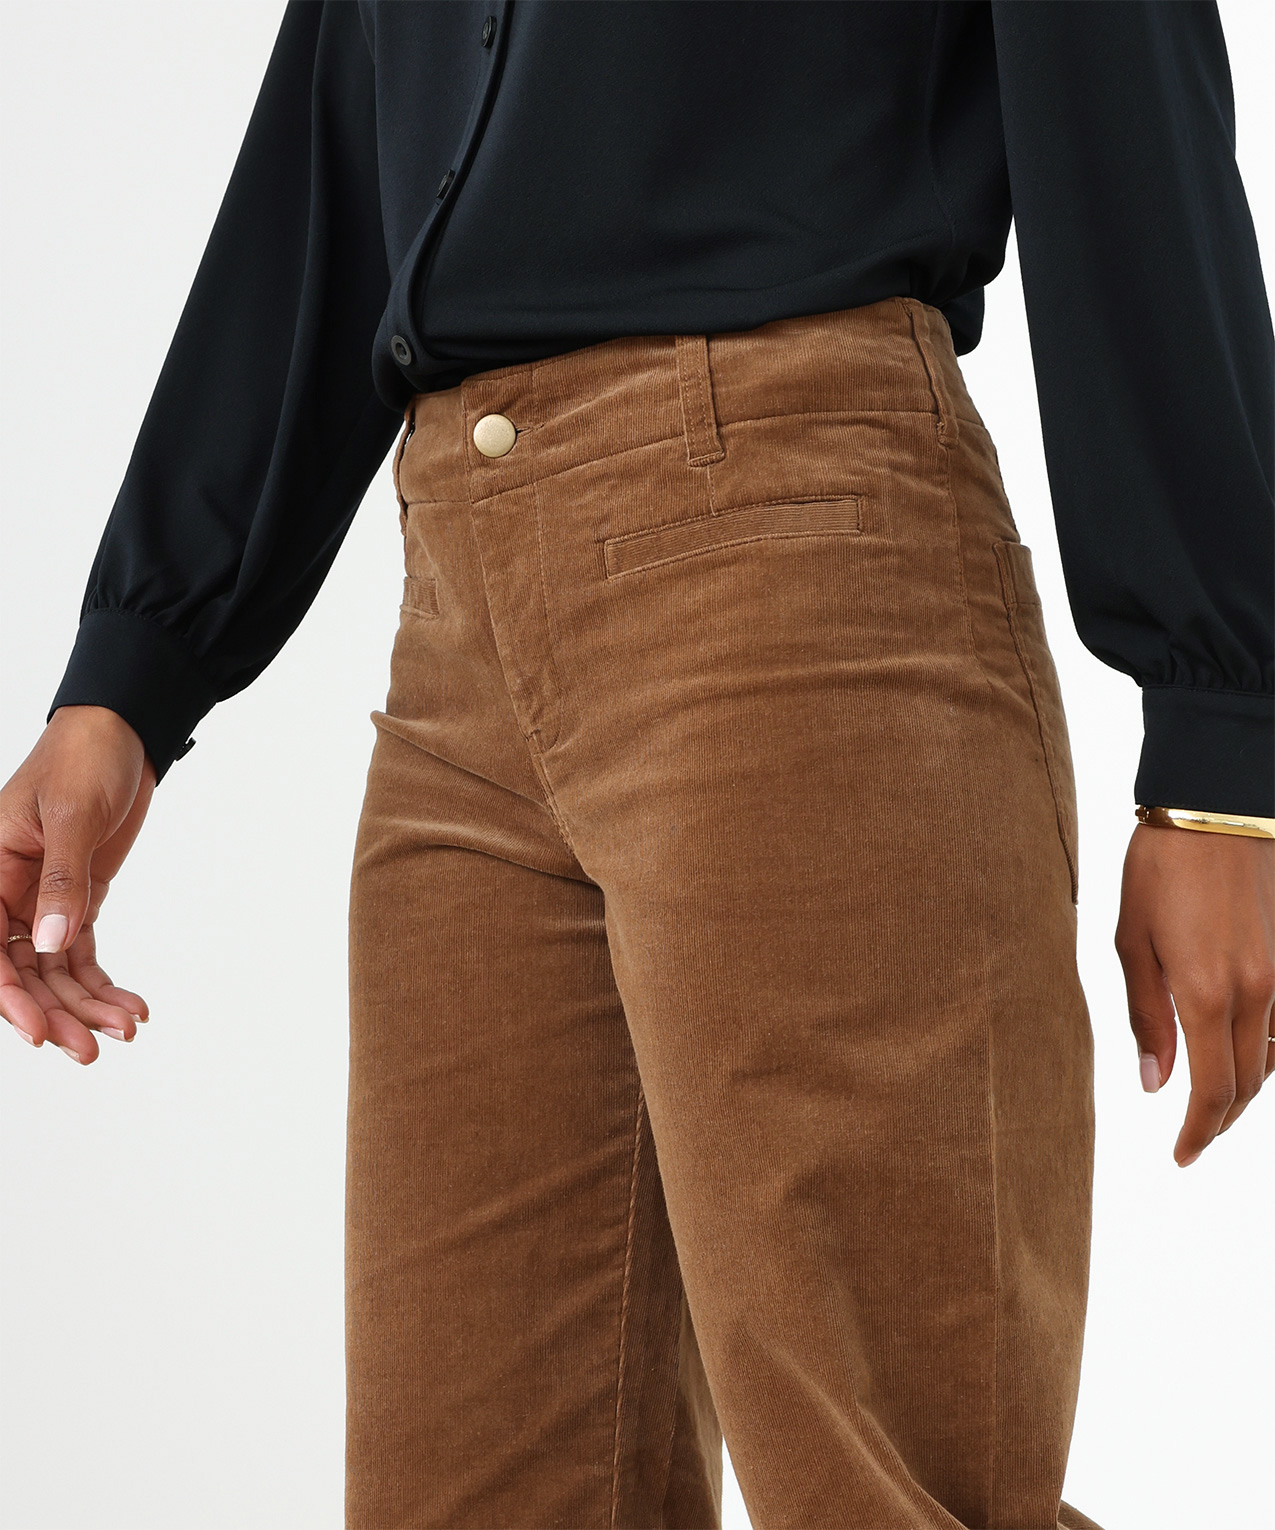 ESPRIT - High-Rise Wide-Leg Corduroy Pants at our online shop